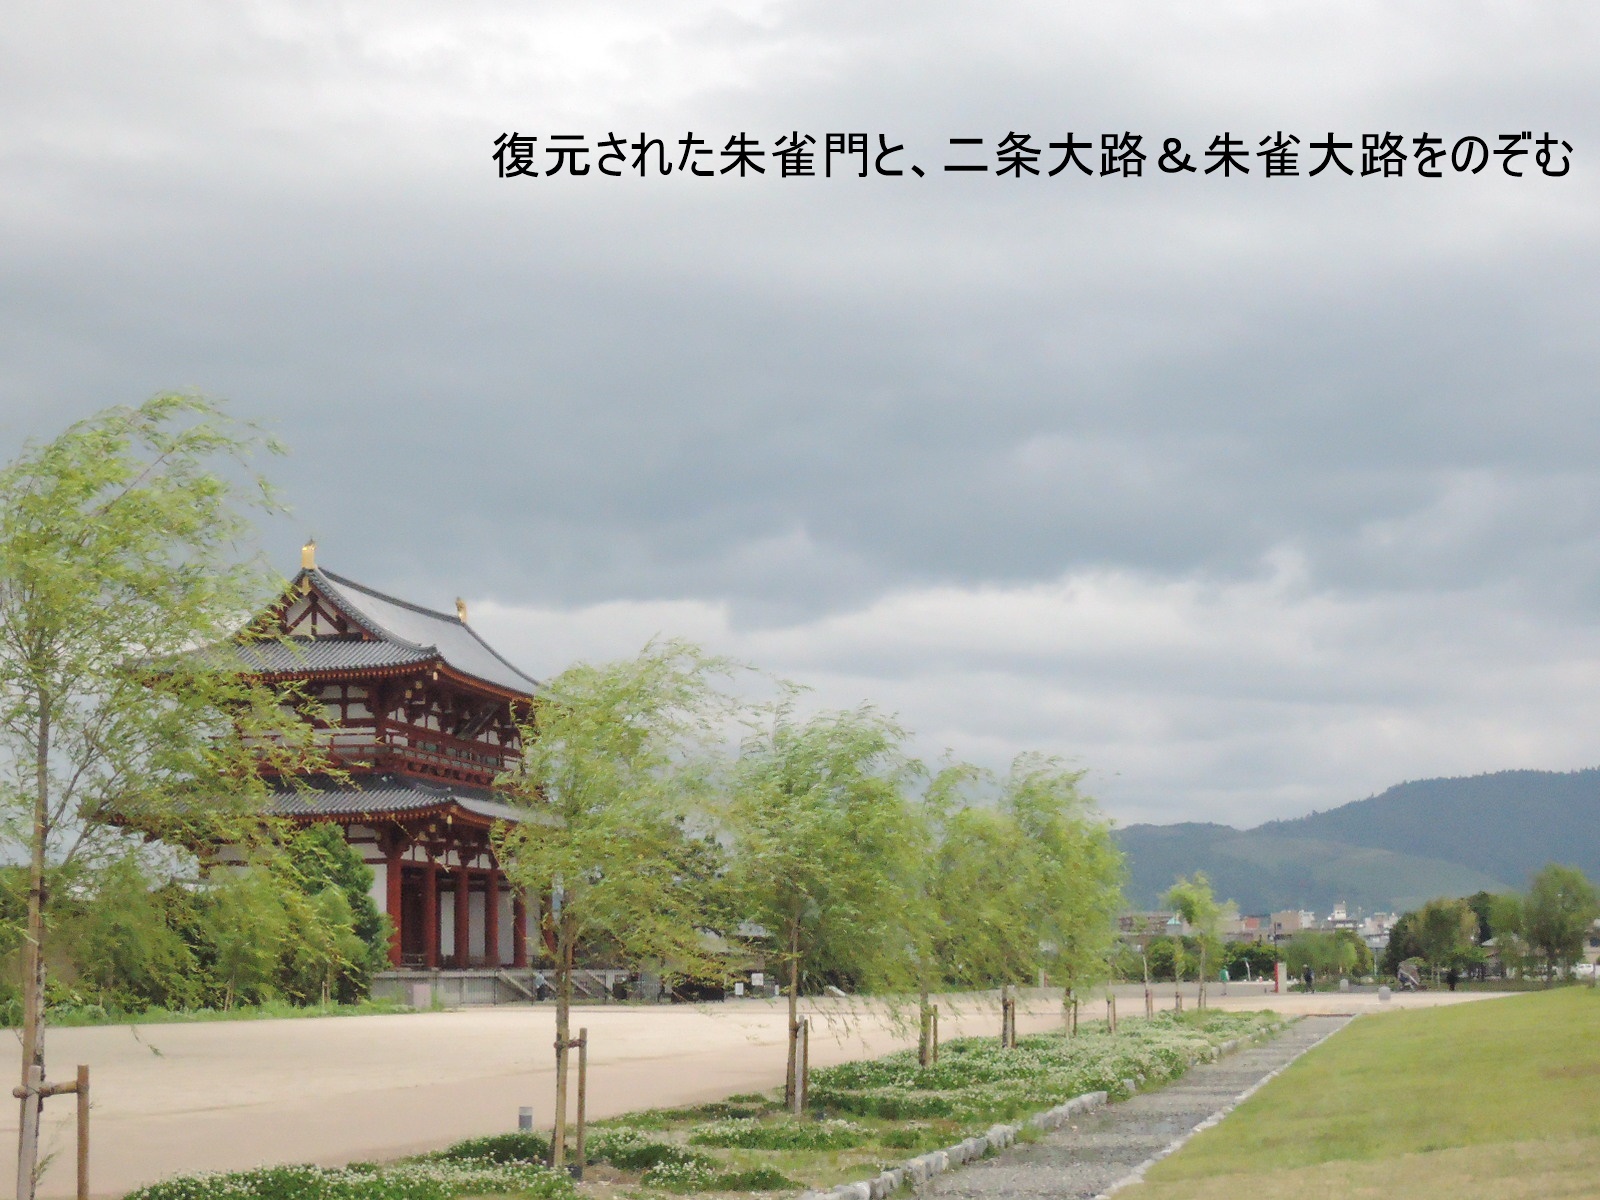 転勤族だった大伴家持が奈良の都を恋い偲ぶ、万葉集の歌から見えること